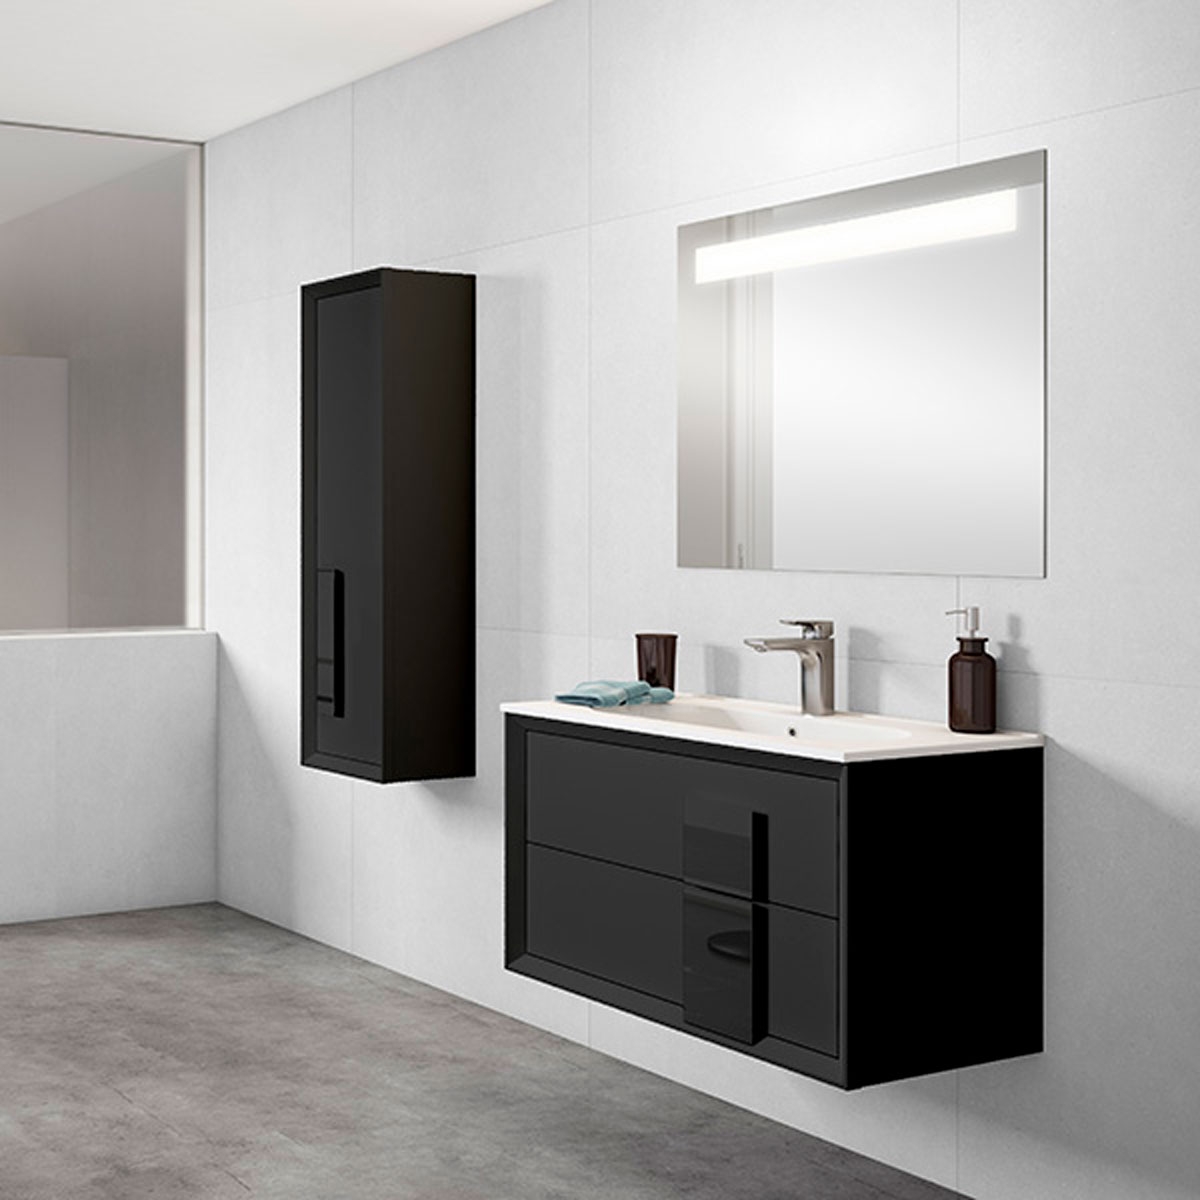 Mueble de baño con tirador cristal medelo decor acabado black1